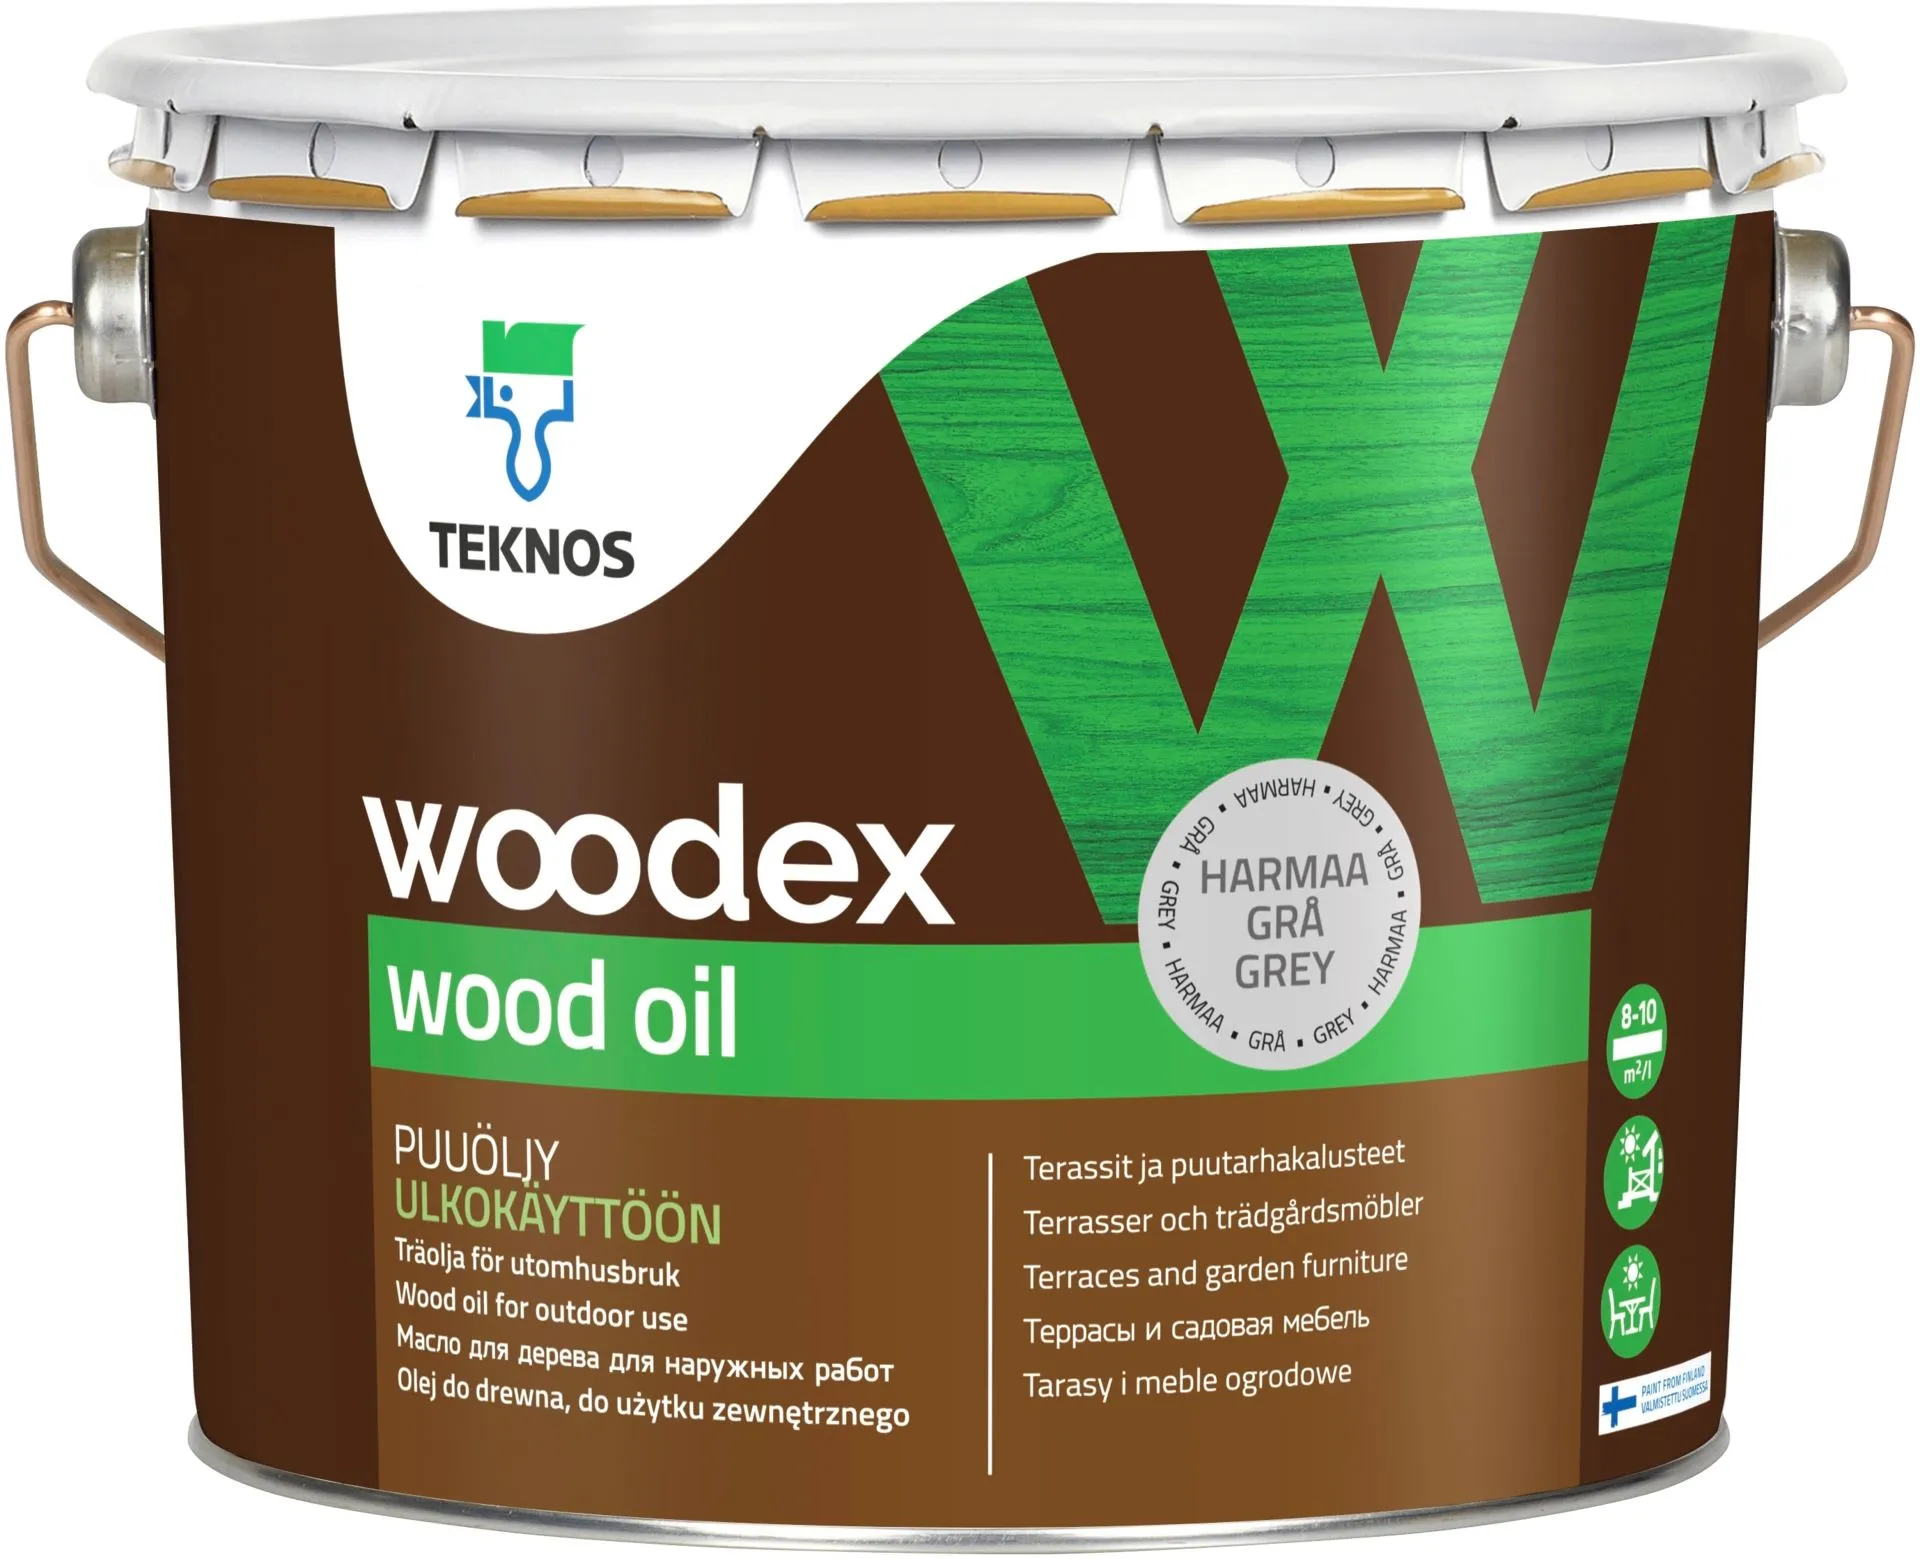 Teknos puuöljy Woodex Wood Oil  2,7 l harmaa